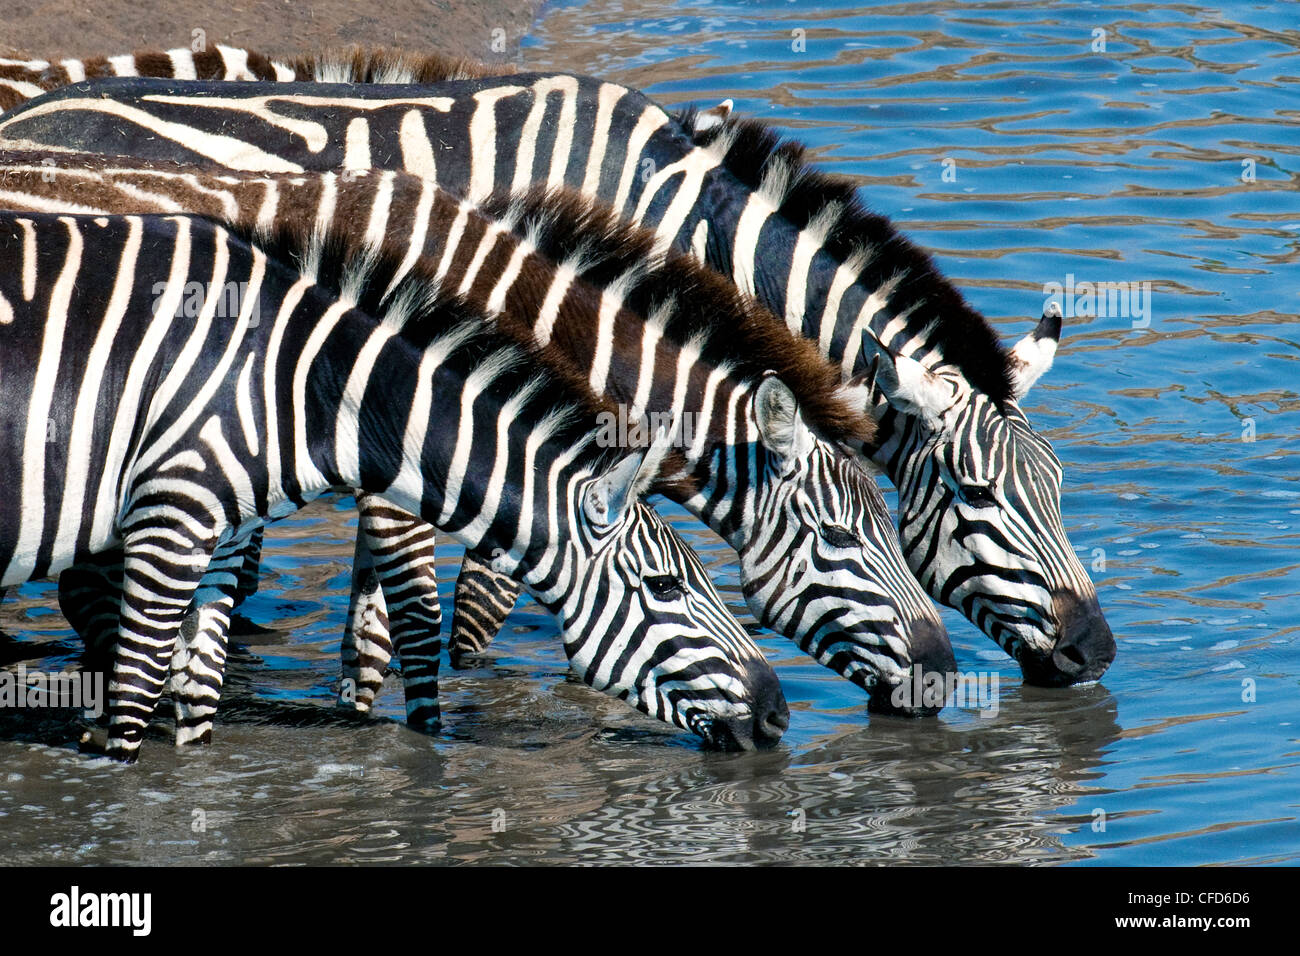 Les zèbres des plaines (Equus burchelli) de l'alcool à titre temporaire, de la rivière du Nord, la réserve de Masai Mara, plaines du Serengeti Kenya Afrique de l'Est Banque D'Images